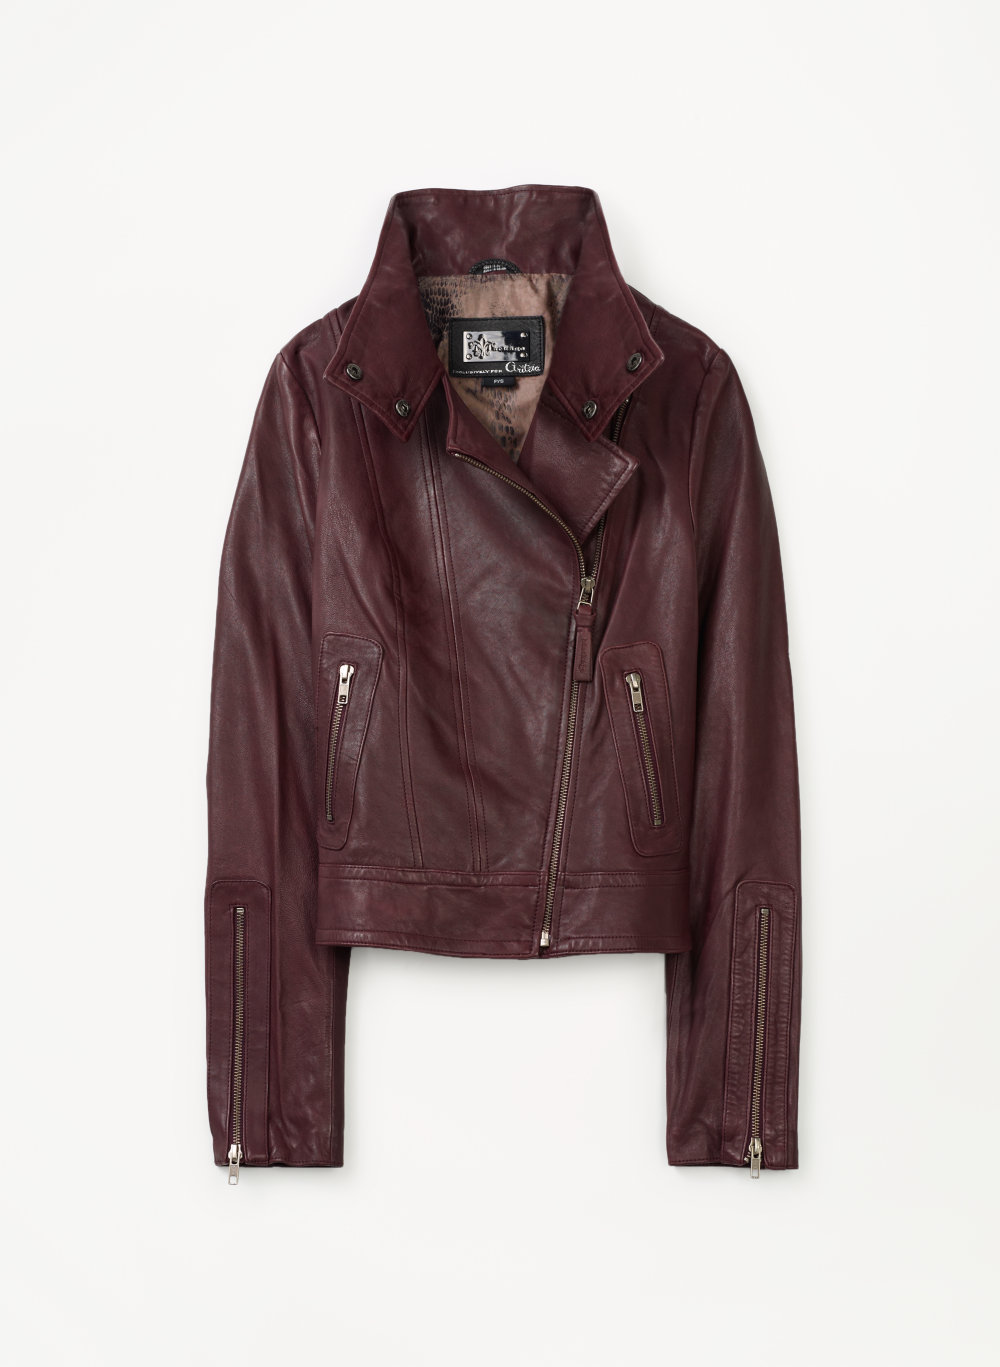 KENYA JACKET | Mackage leather jacket, Jackets, Clothes